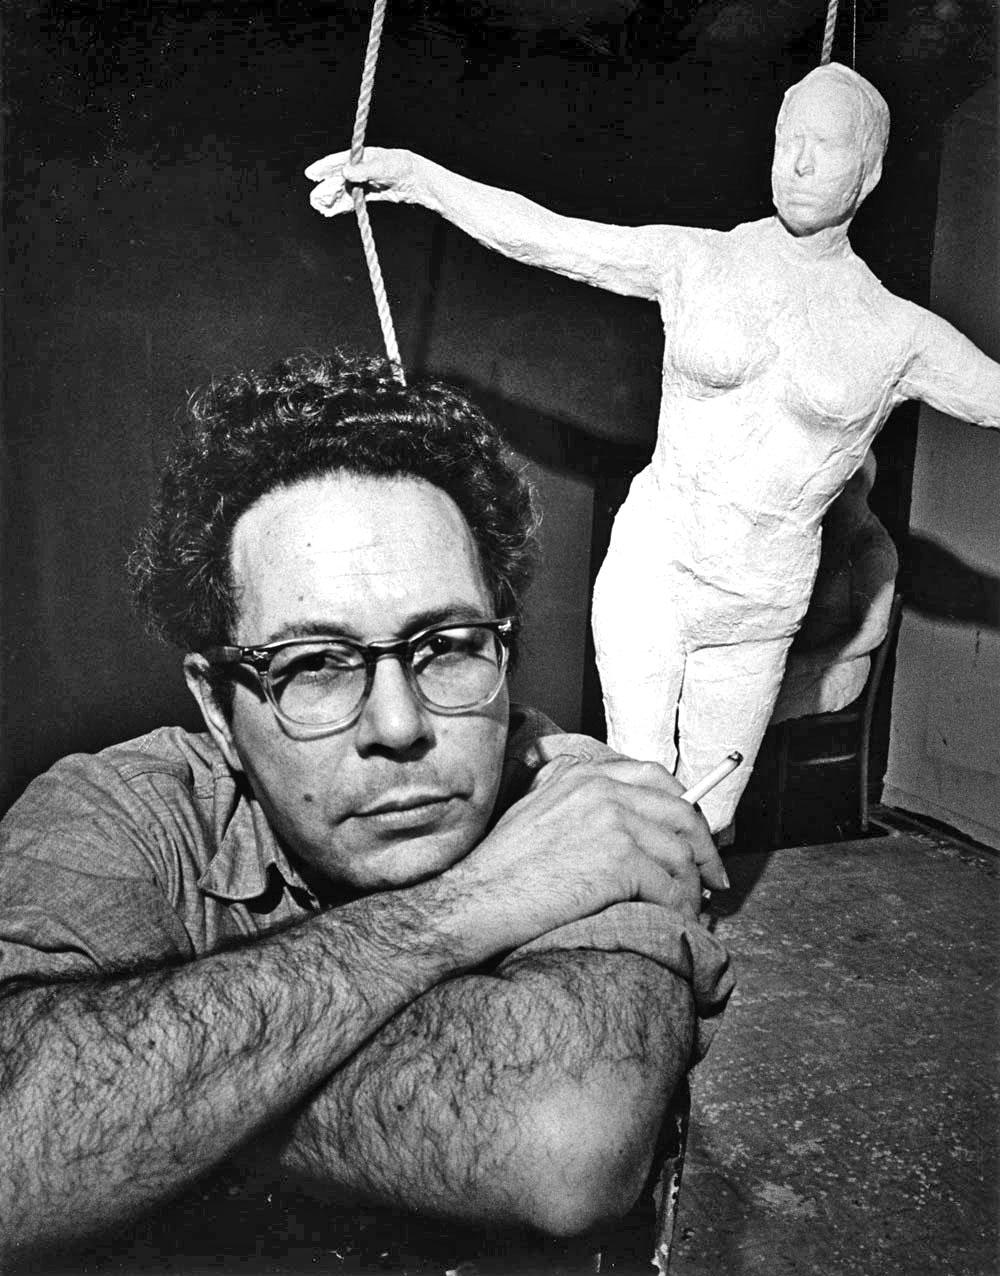 11 x 14" Silbergelatinefotografie des Bildhauers George Segal in seinem Studio in Manhattan mit neuen Arbeiten, 1969, signiert von Jack Mitchell auf der Rückseite des Abzugs. Kommt direkt aus den Jack Mitchell Archives mit einem Echtheitszertifikat.